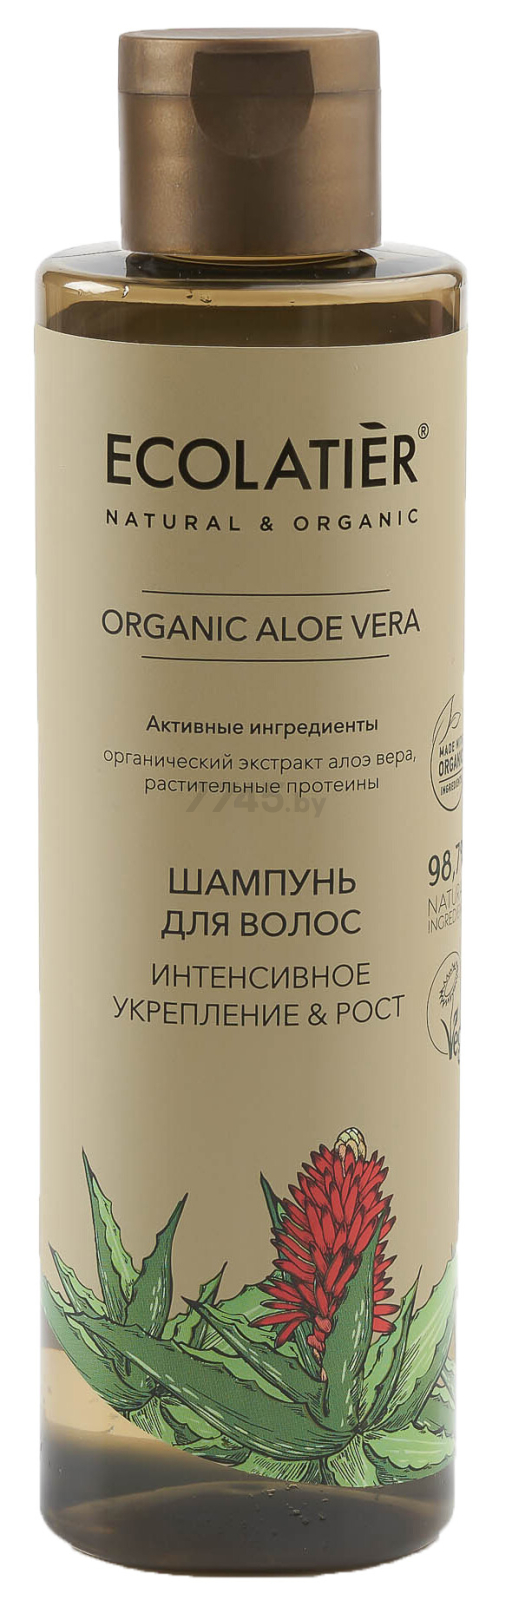 Шампунь ECOLATIER Organic Aloe Vera Интенсивное укрепление и Рост 250 мл (4620046172583)